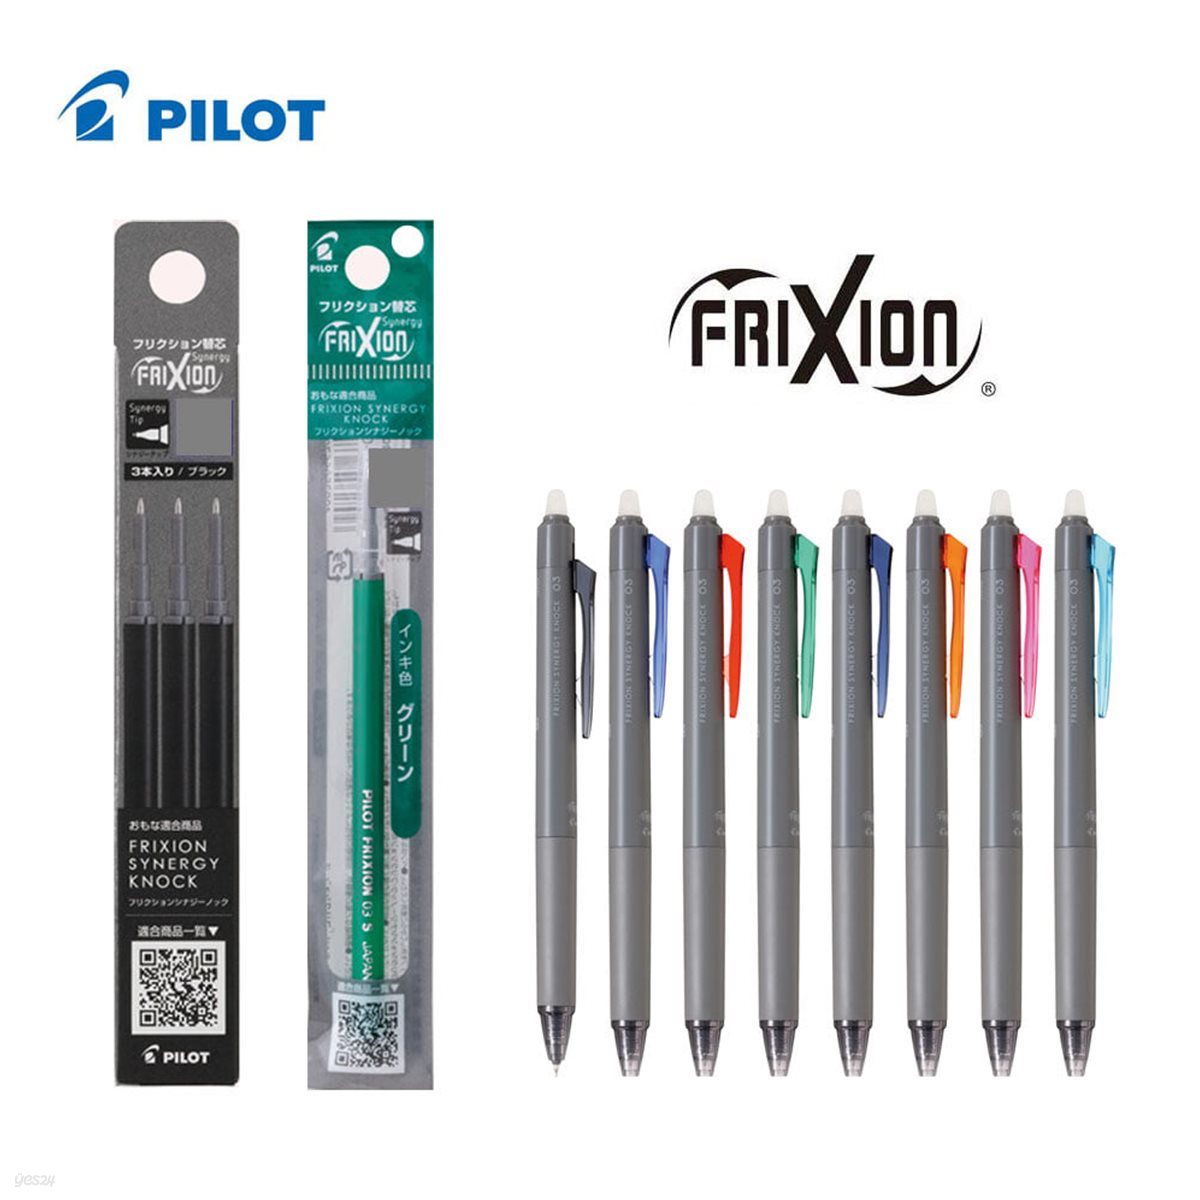 [알앤비]PILOT frixion 파이롯트 지워지는 볼펜 프릭션 시너지 노크 리필심 0.3 0.4 0.5mm